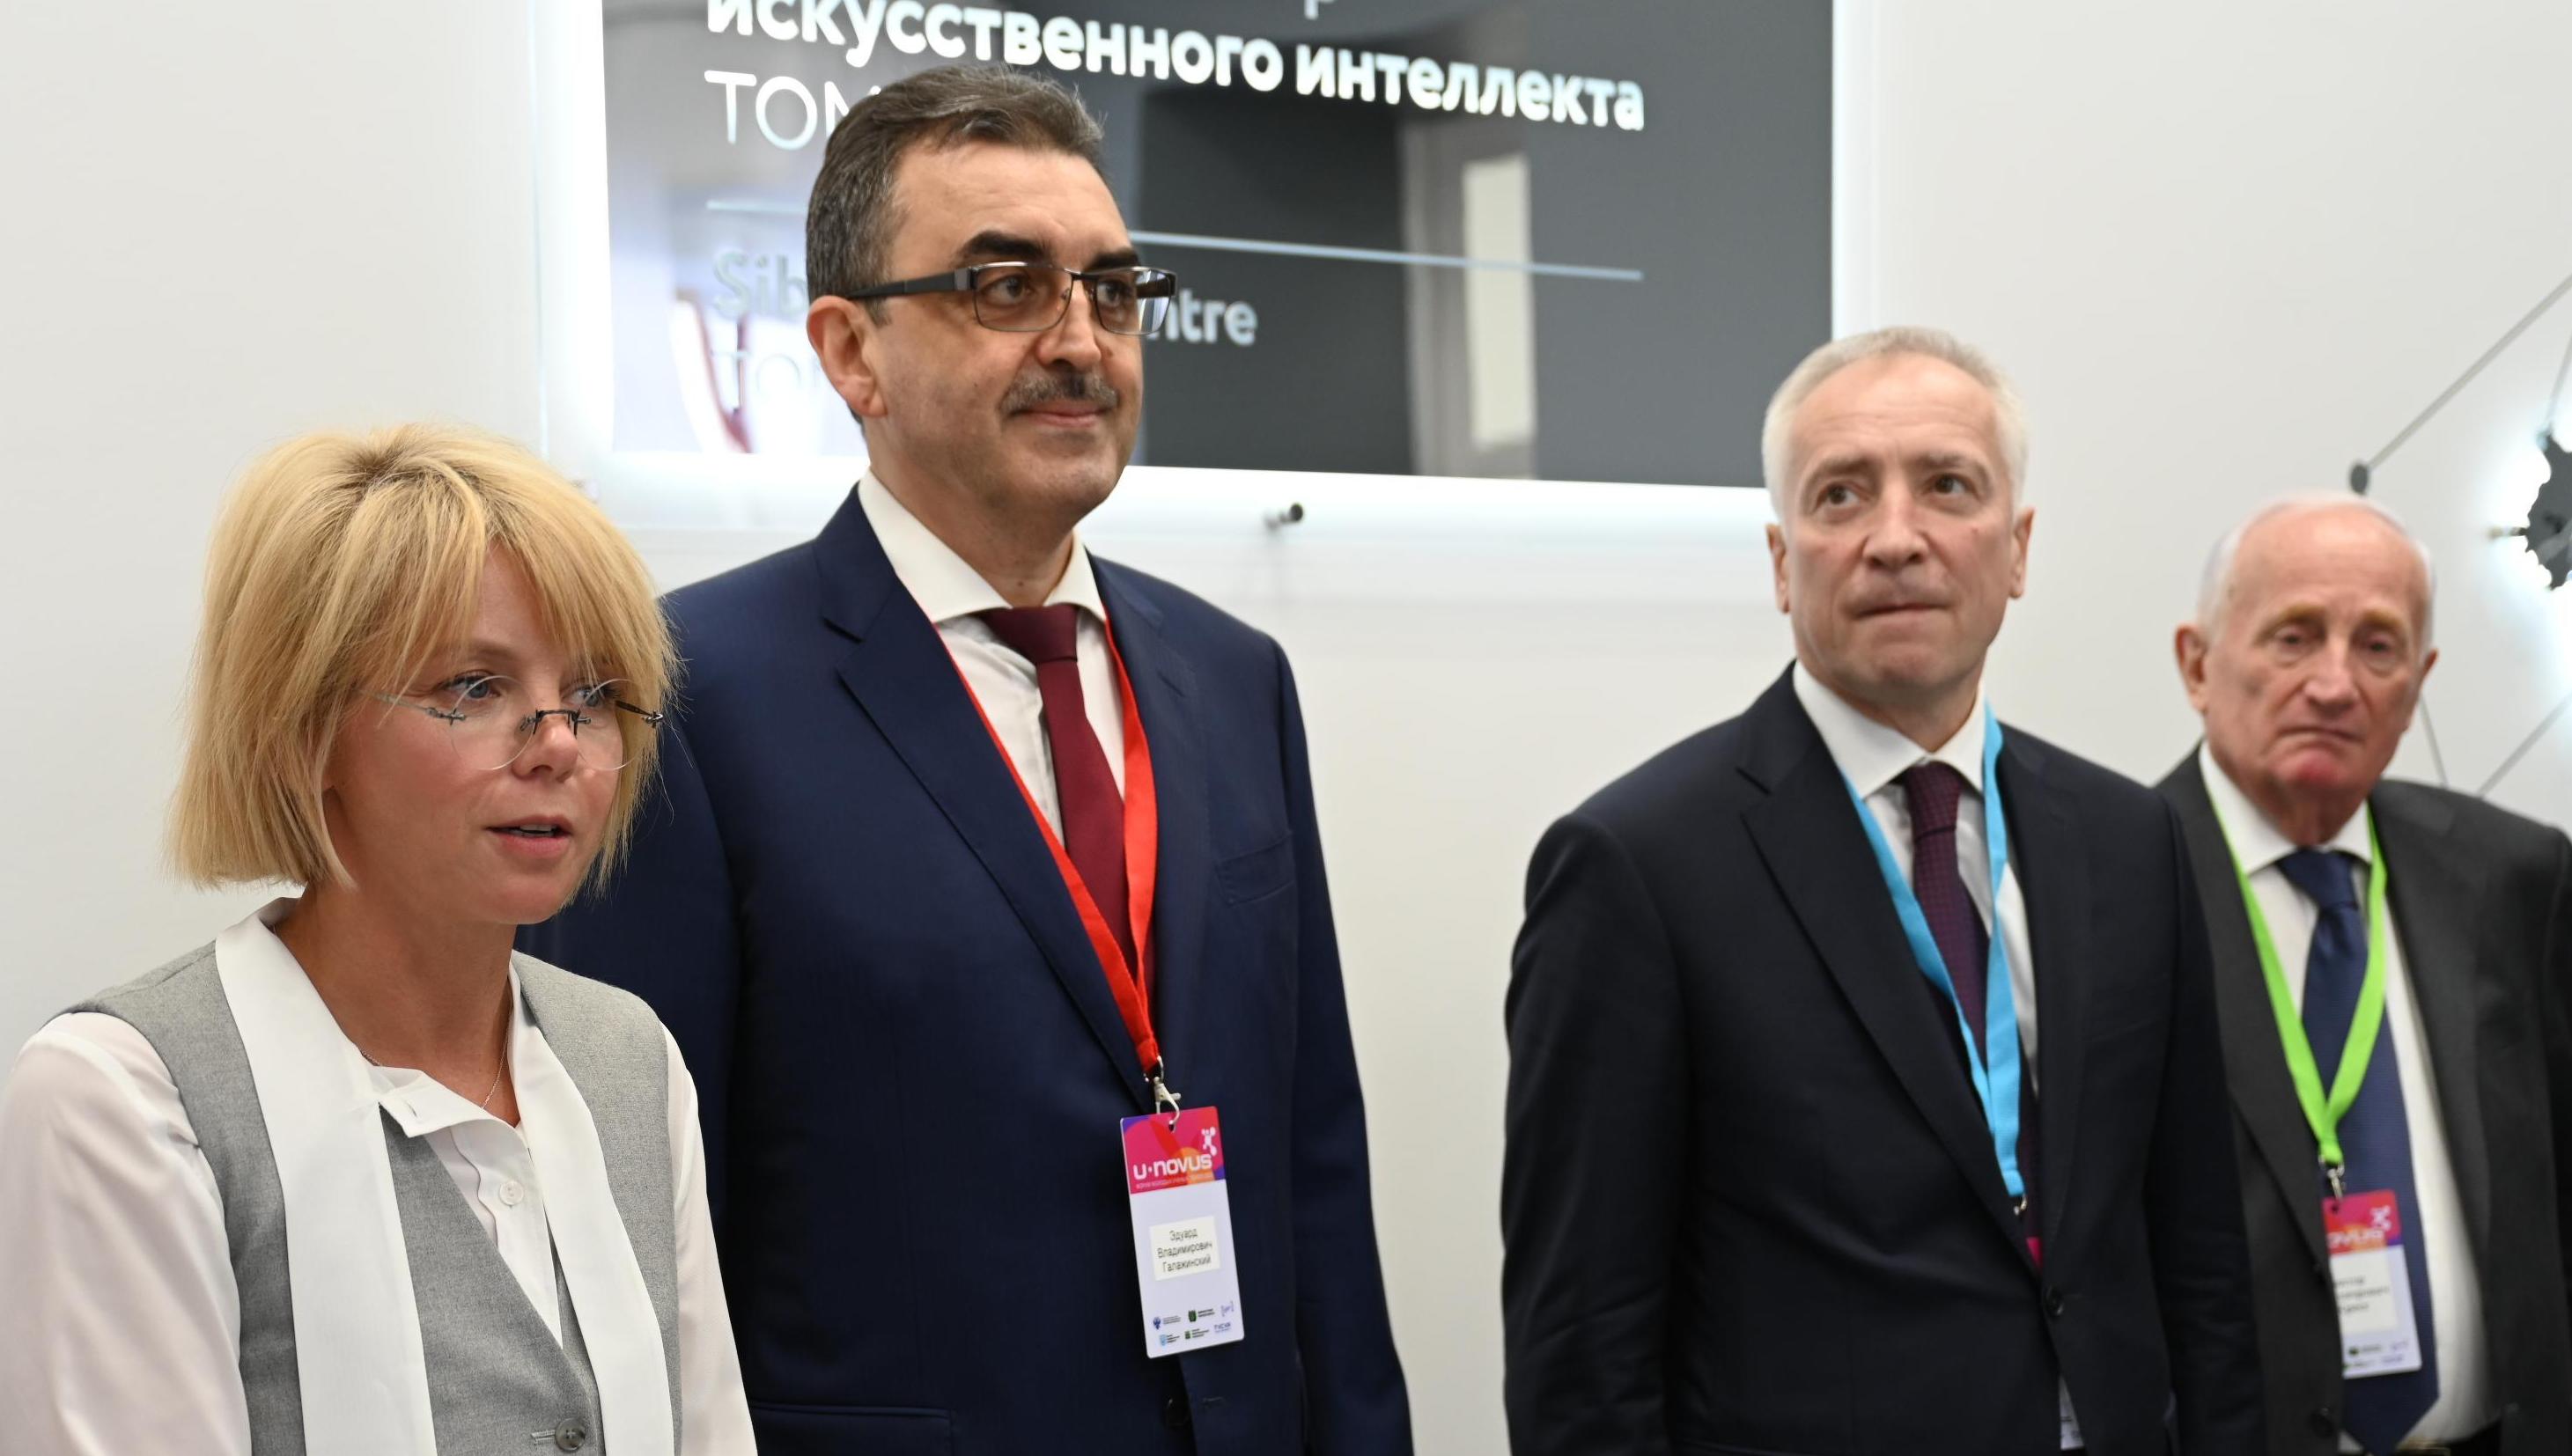 ТГУ и СБЕР открыли Центр искусственного интеллекта в Томске